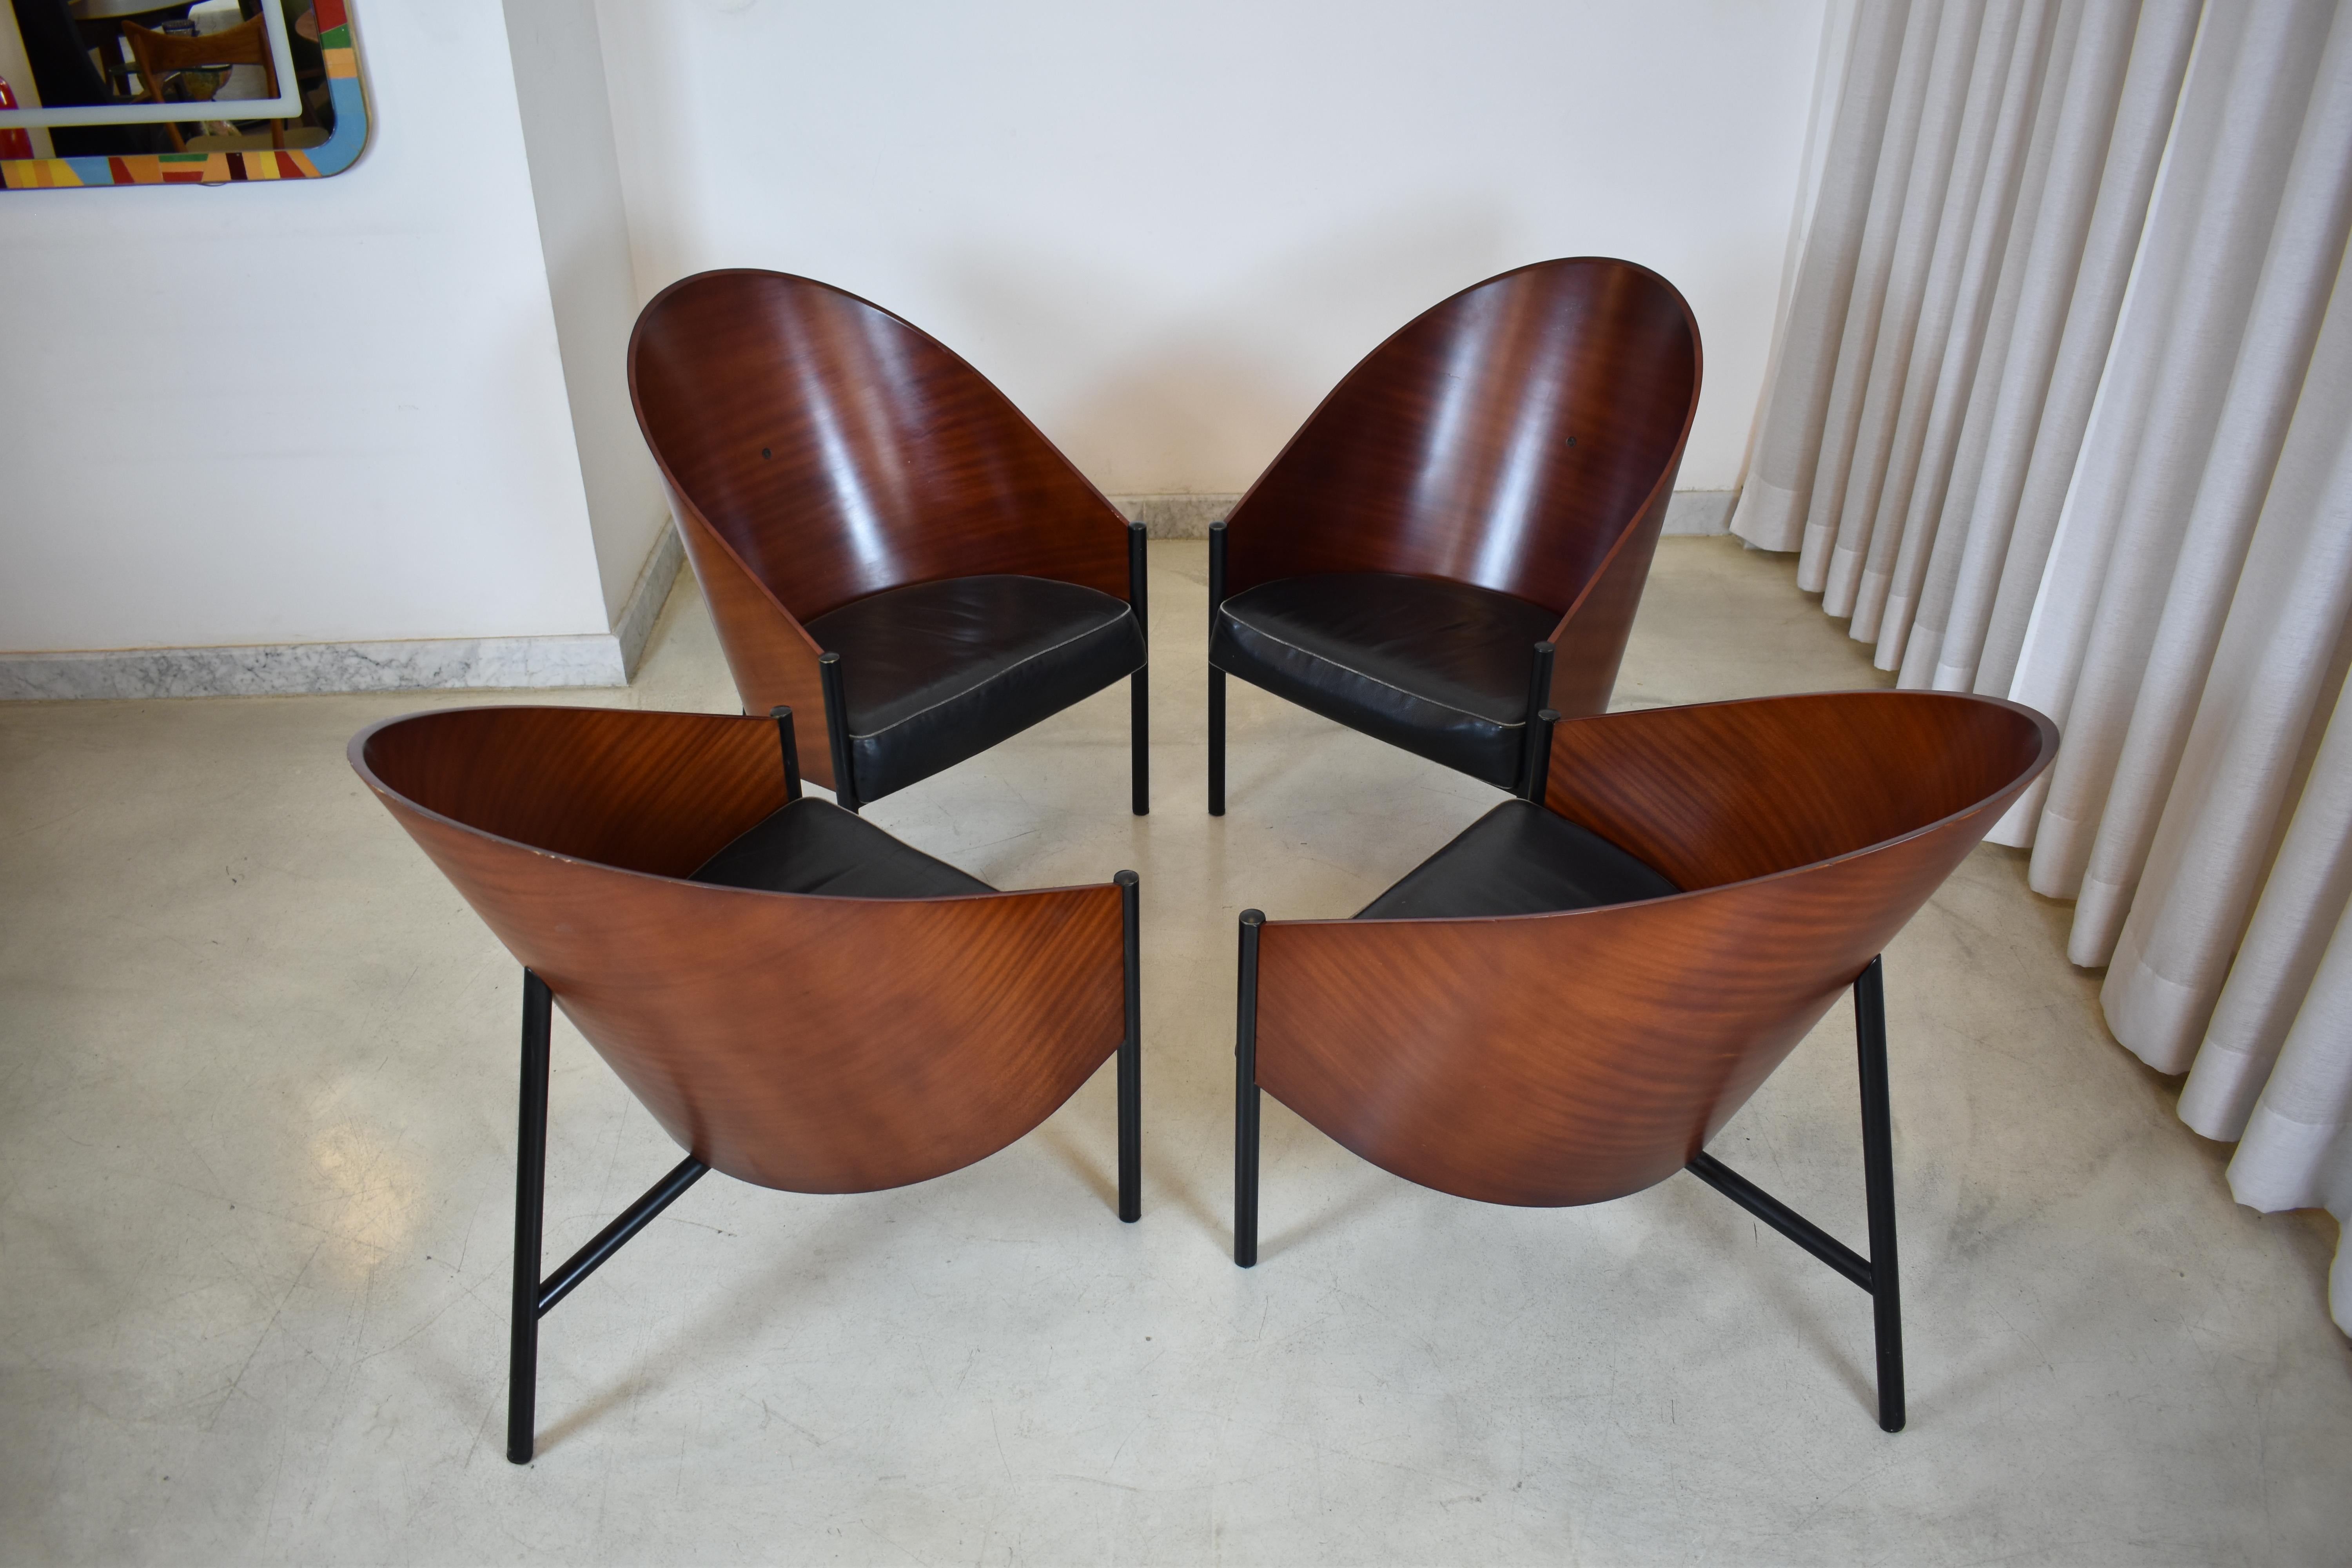 Der 1980 von dem berühmten Philippe Starck entworfene Pratfall-Sessel ist ein Juwel des modernen Designs. Diese erste Ausgabe verbindet Minimalismus und Funktionalität und spiegelt den avantgardistischen Stil von Starck wider. Er ist aus